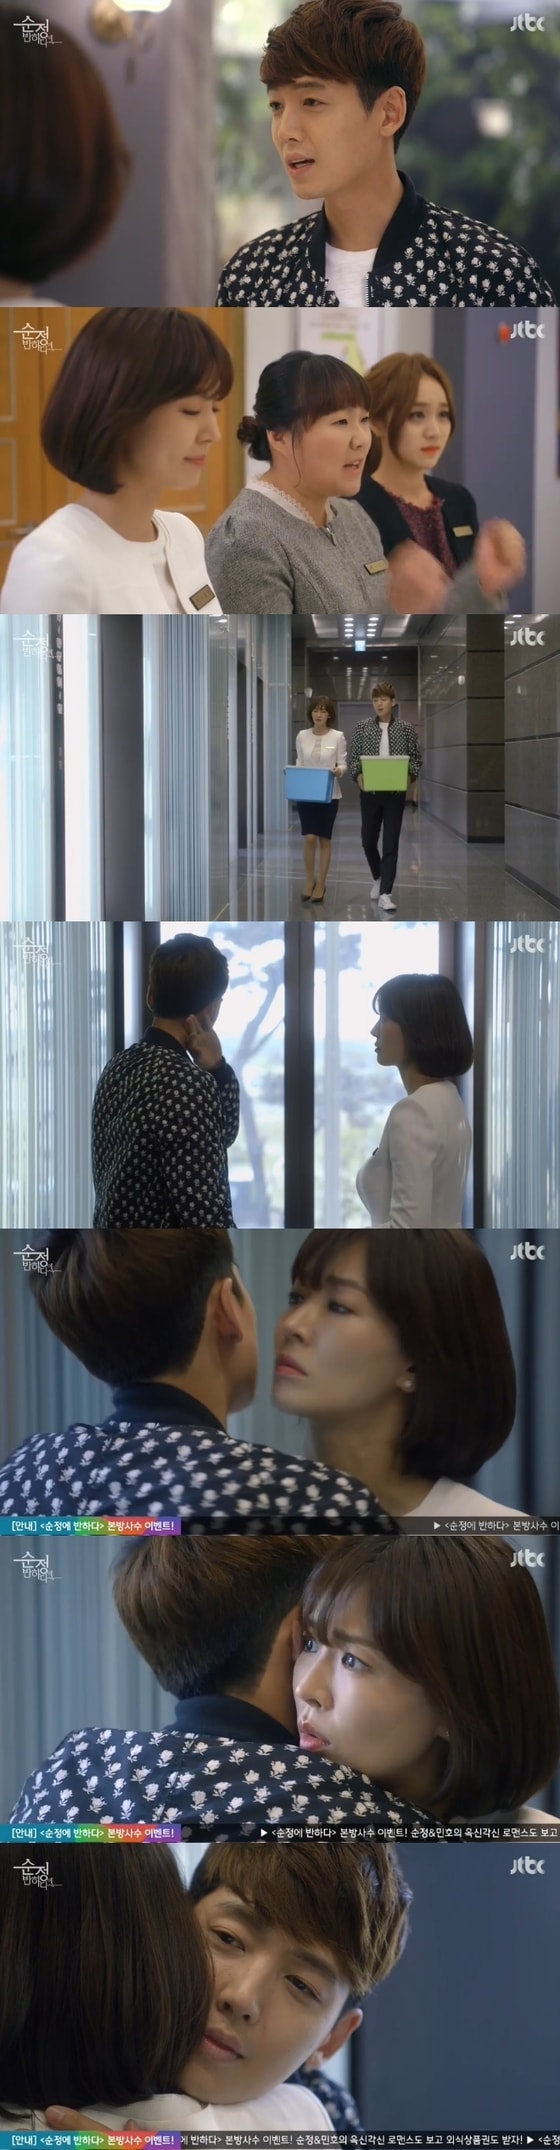 '순정' 정경호가 회사를 떠났다. © News1스포츠 / JTBC '순정에 반하다' 캡처